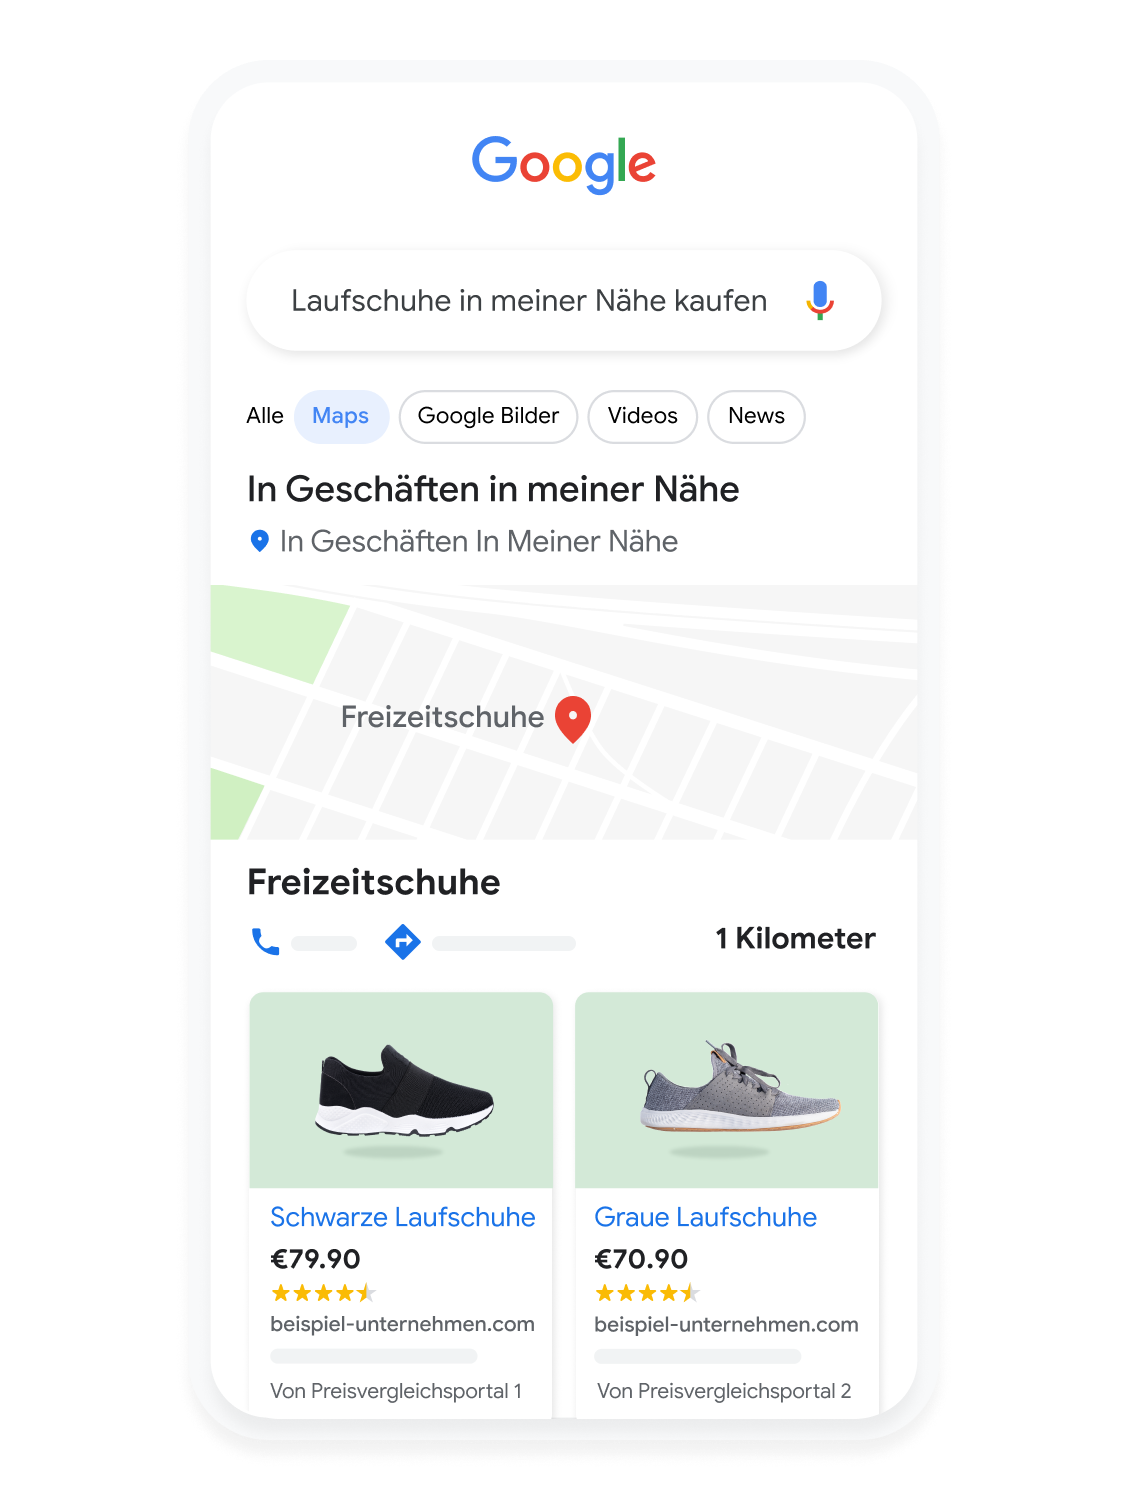 Auf einer animierten Mobilgeräte-Benutzeroberfläche ist zu sehen, wie ein Nutzer auf Google Maps nach Laufschuhen sucht.